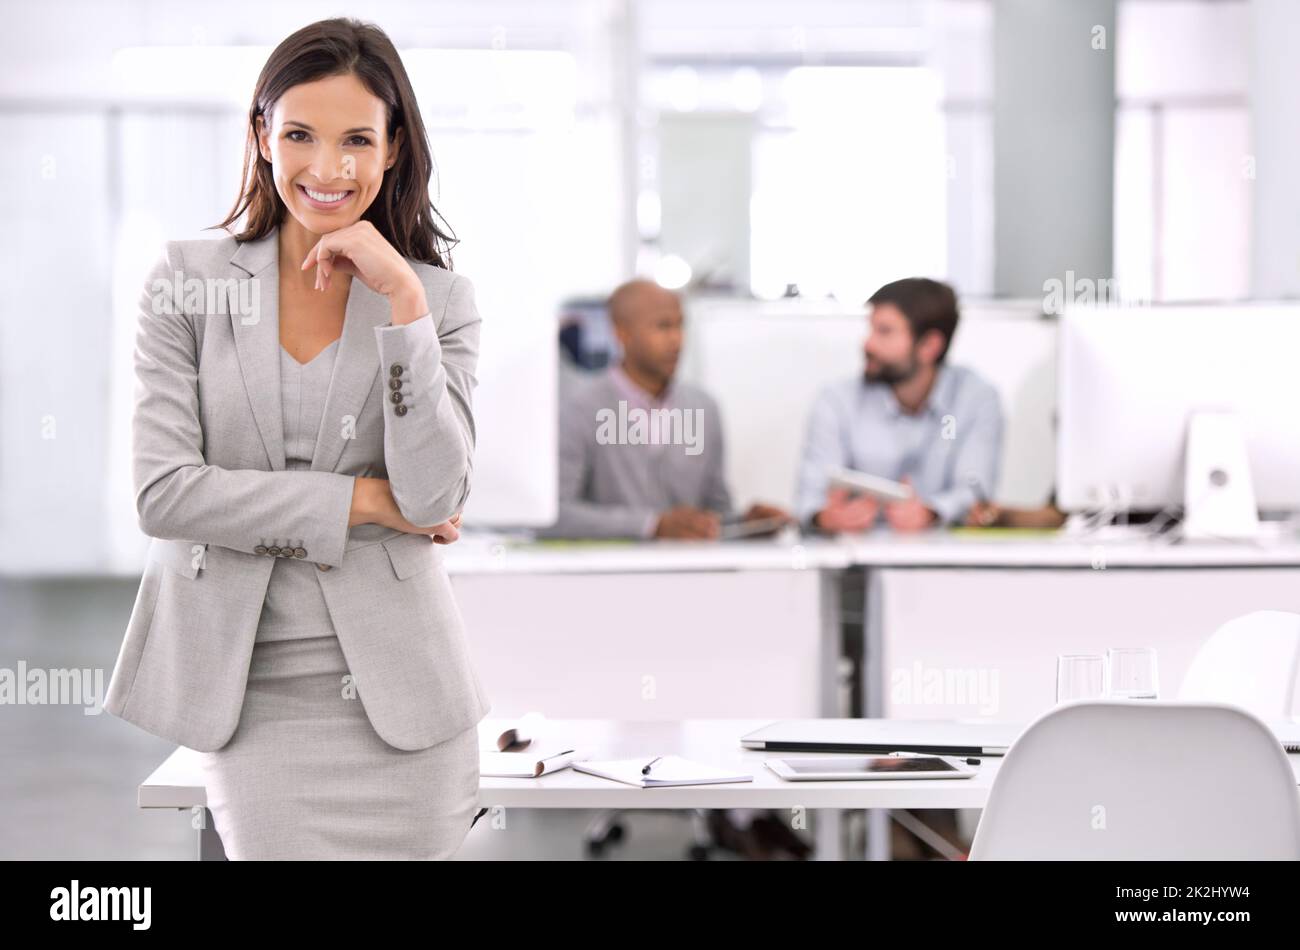 La crème s'élève toujoursPhoto d'une jeune femme d'affaires debout dans un bureau. Banque D'Images